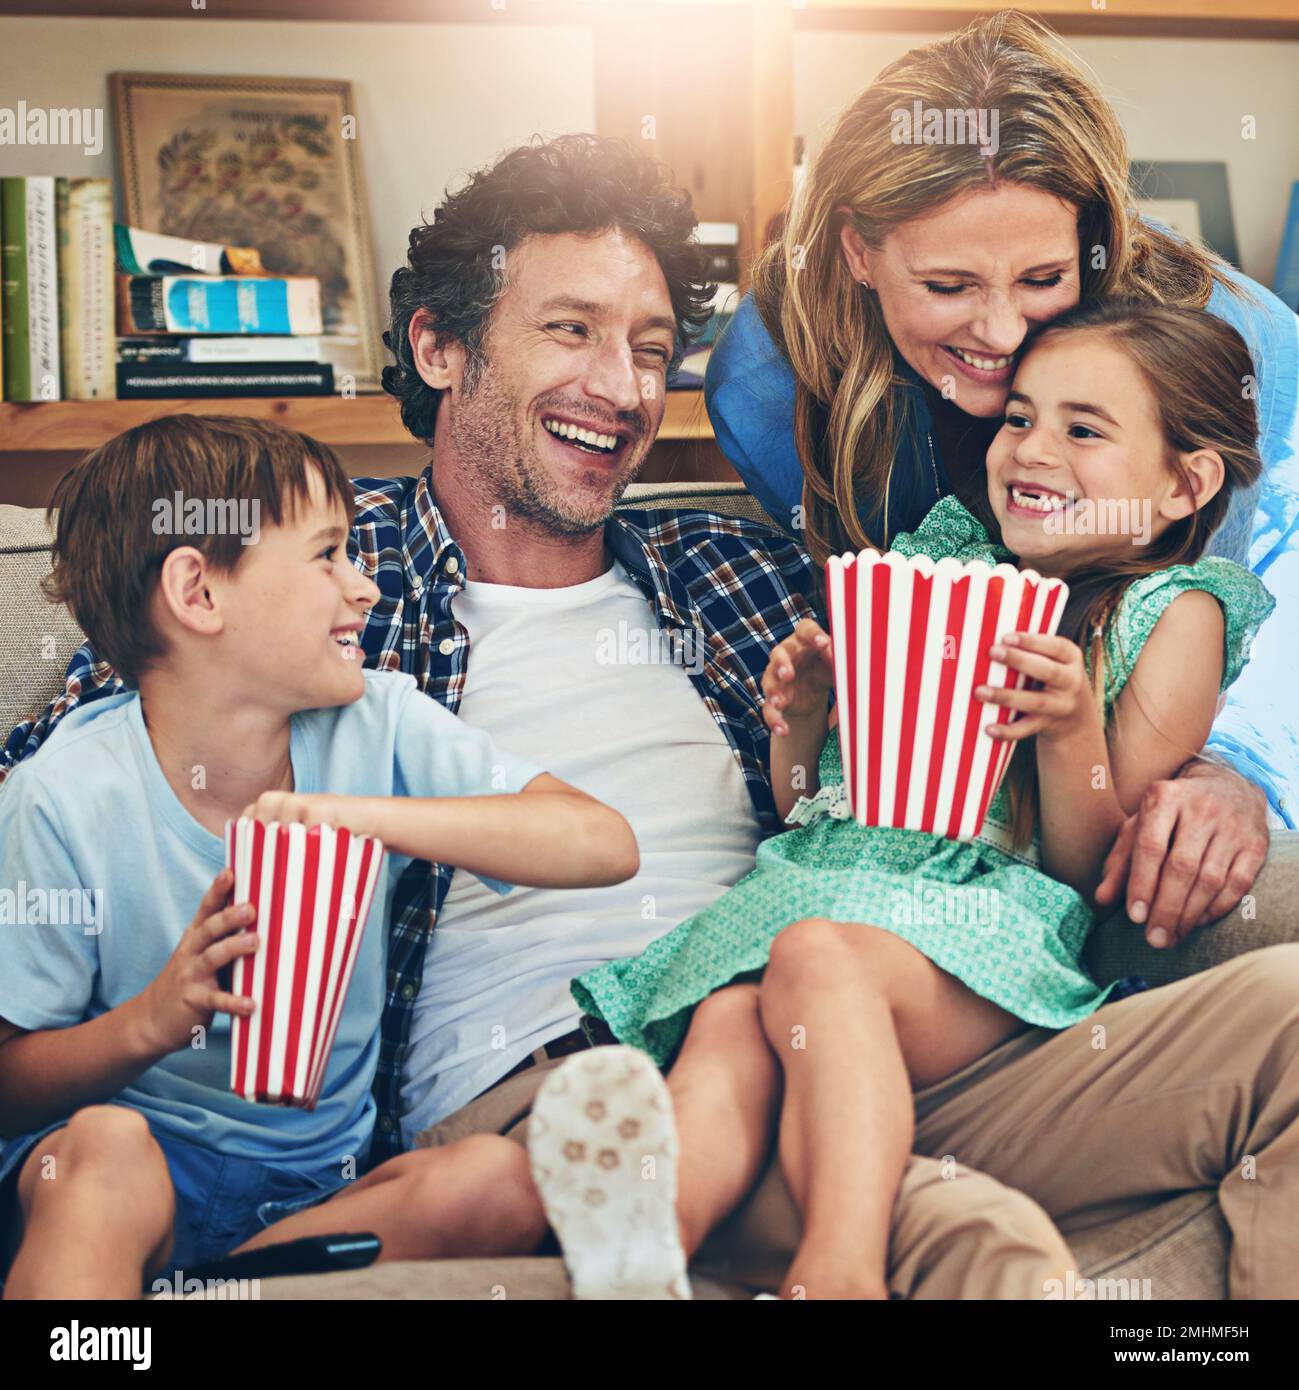 Filme mit ihren kleinen Zwergen. Eine glückliche Familie, die sich zu Hause Filme auf dem Sofa ansieht. Stockfoto